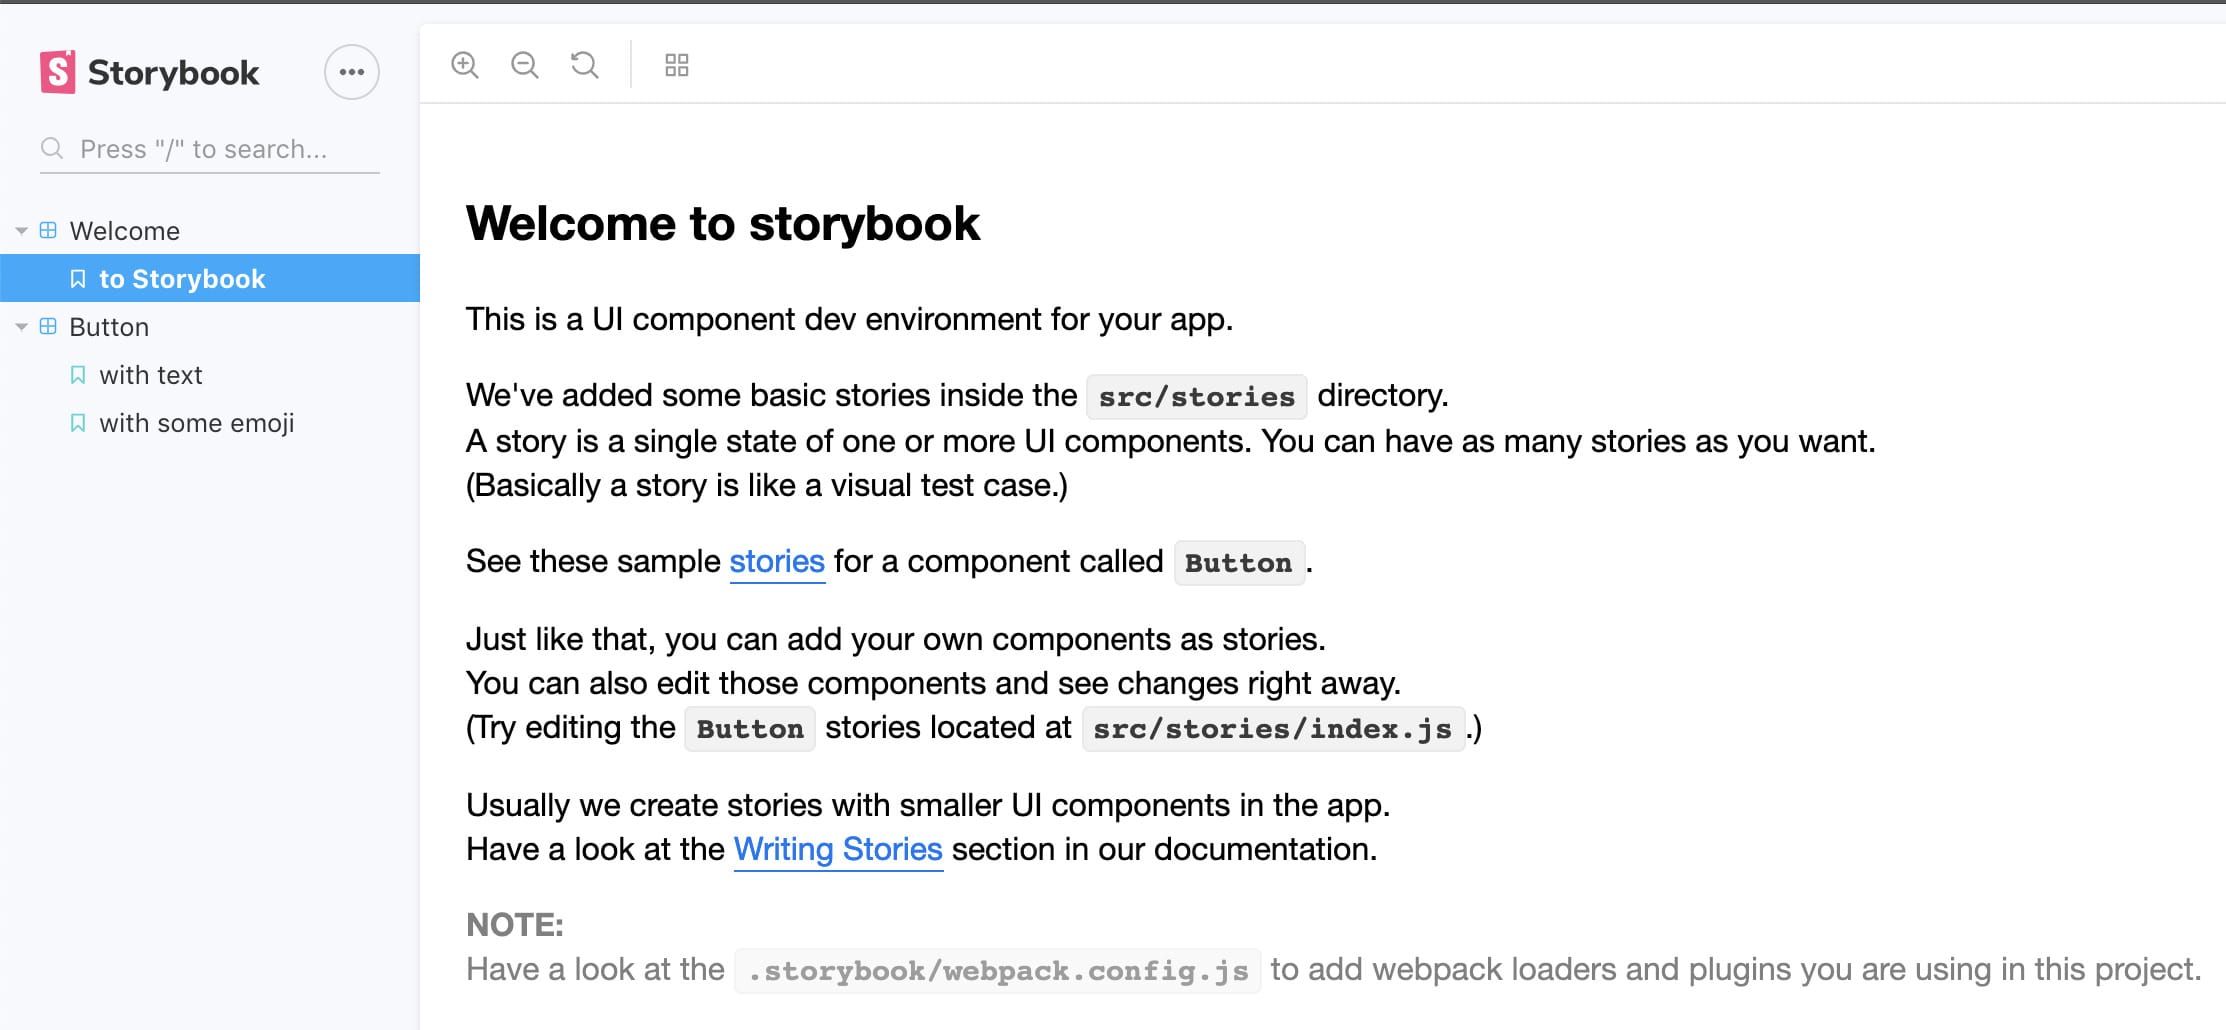 Storybook Homepage